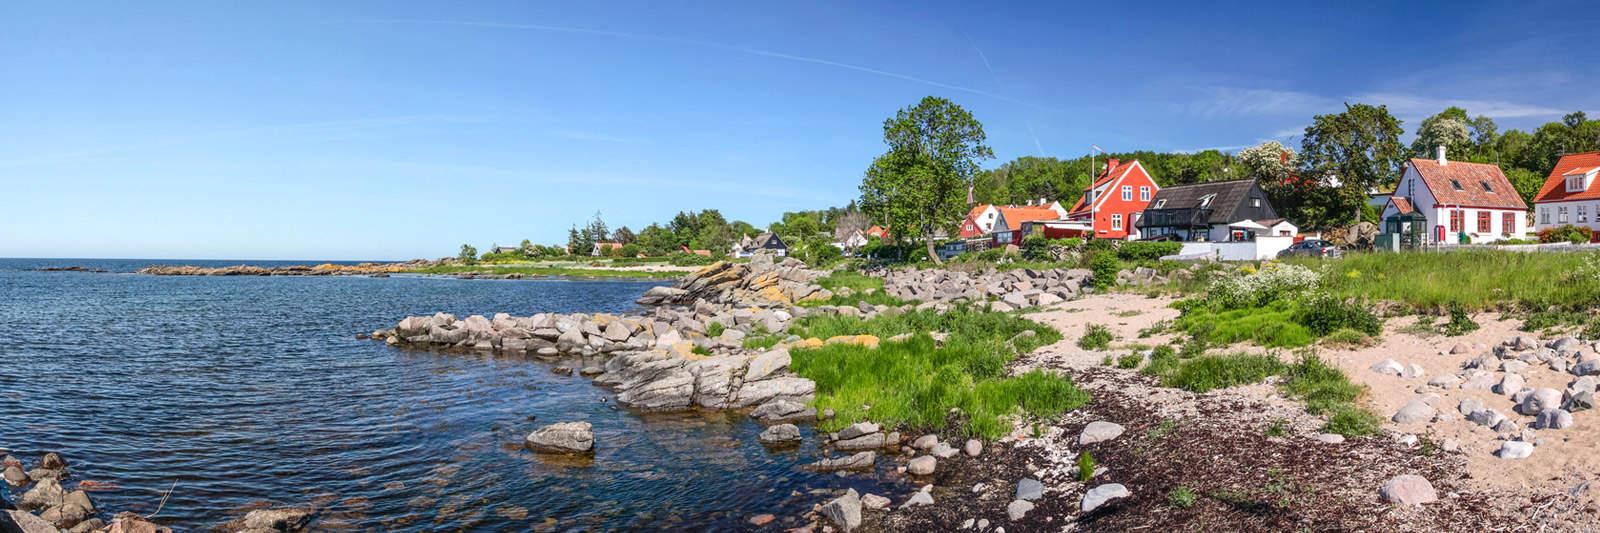 15 Ferienwohnungen und Ferienhäuser in Føns - tourist-online.de